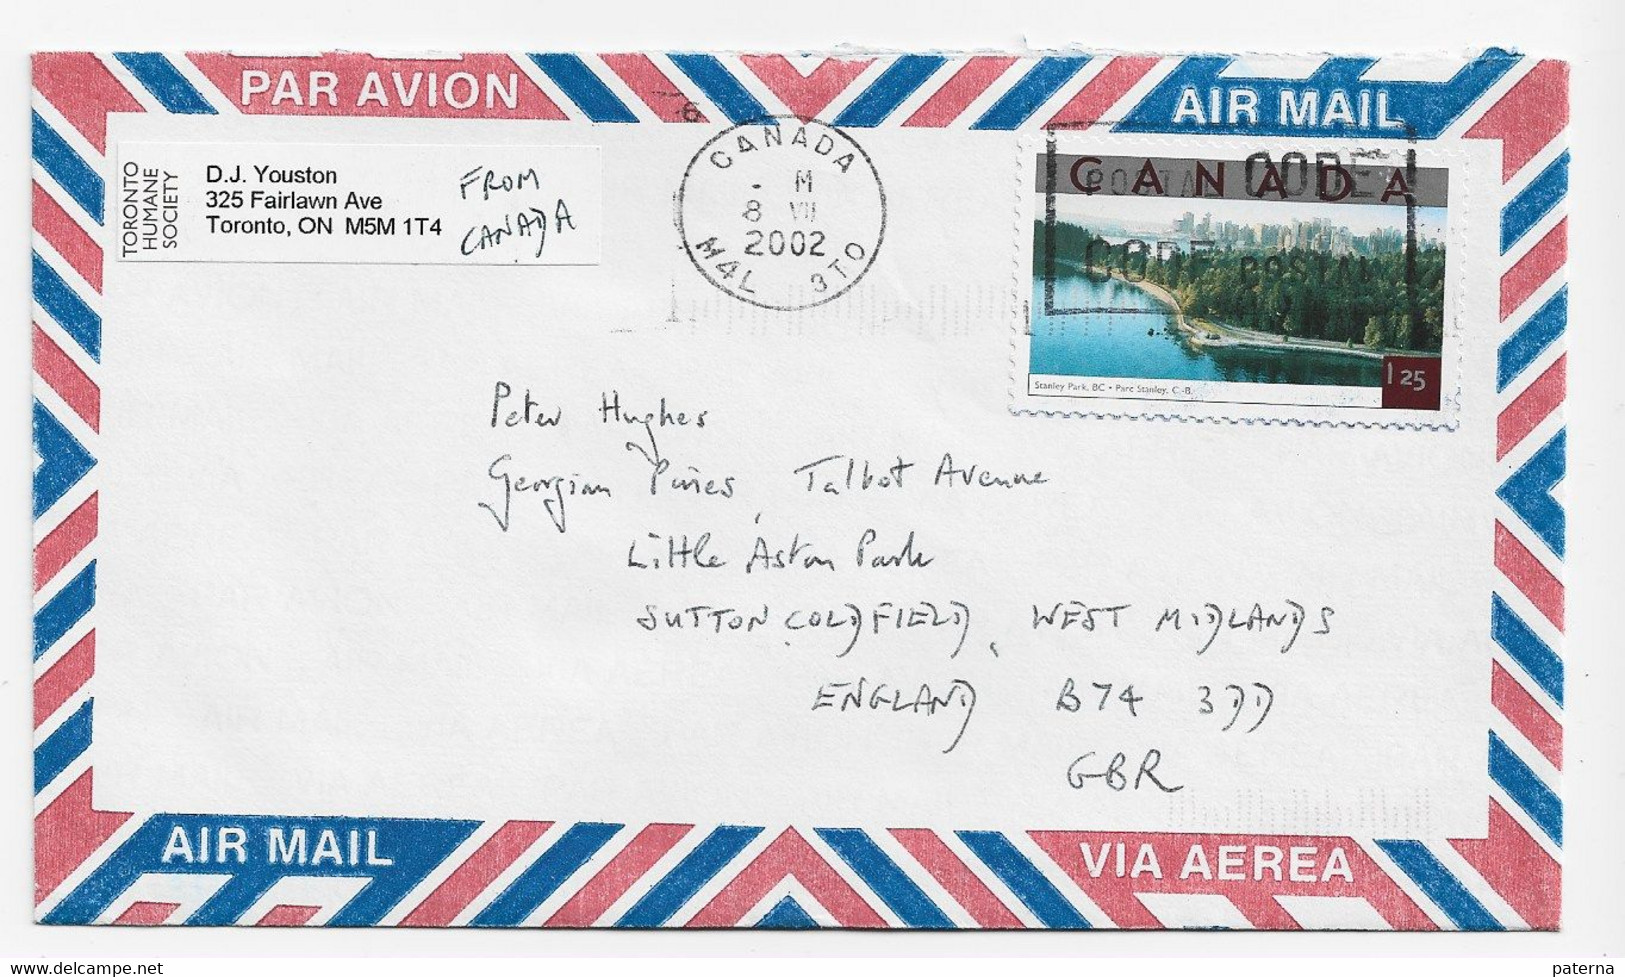 3704   Carta Aérea  Canadá 2002, - Lettres & Documents